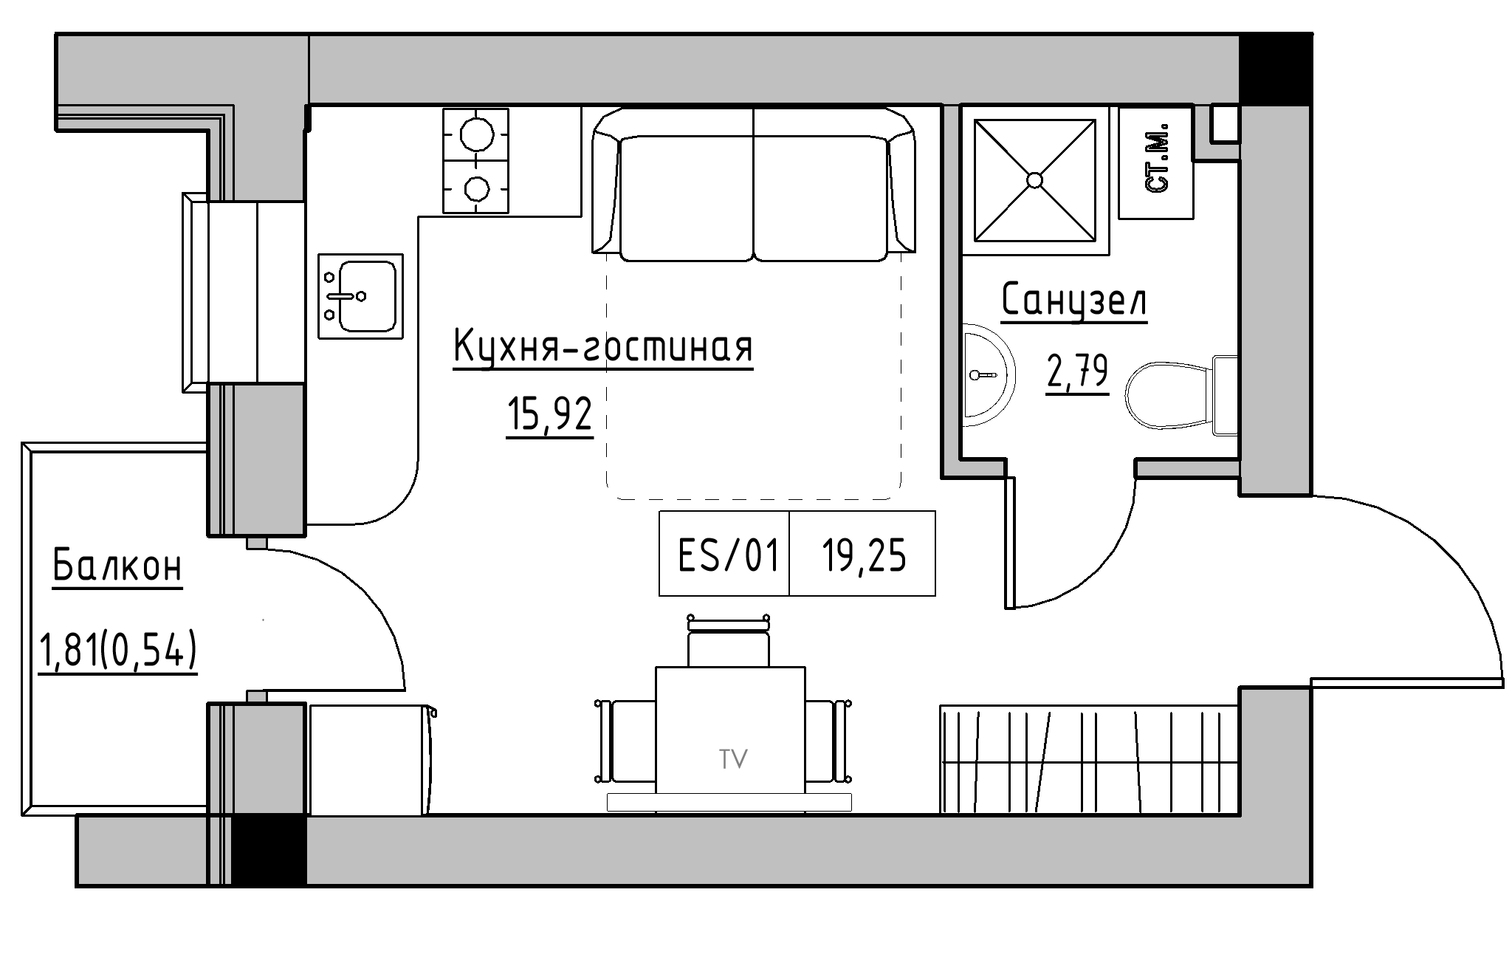 Планування Smart-квартира площею 19.25м2, KS-013-05/0004.